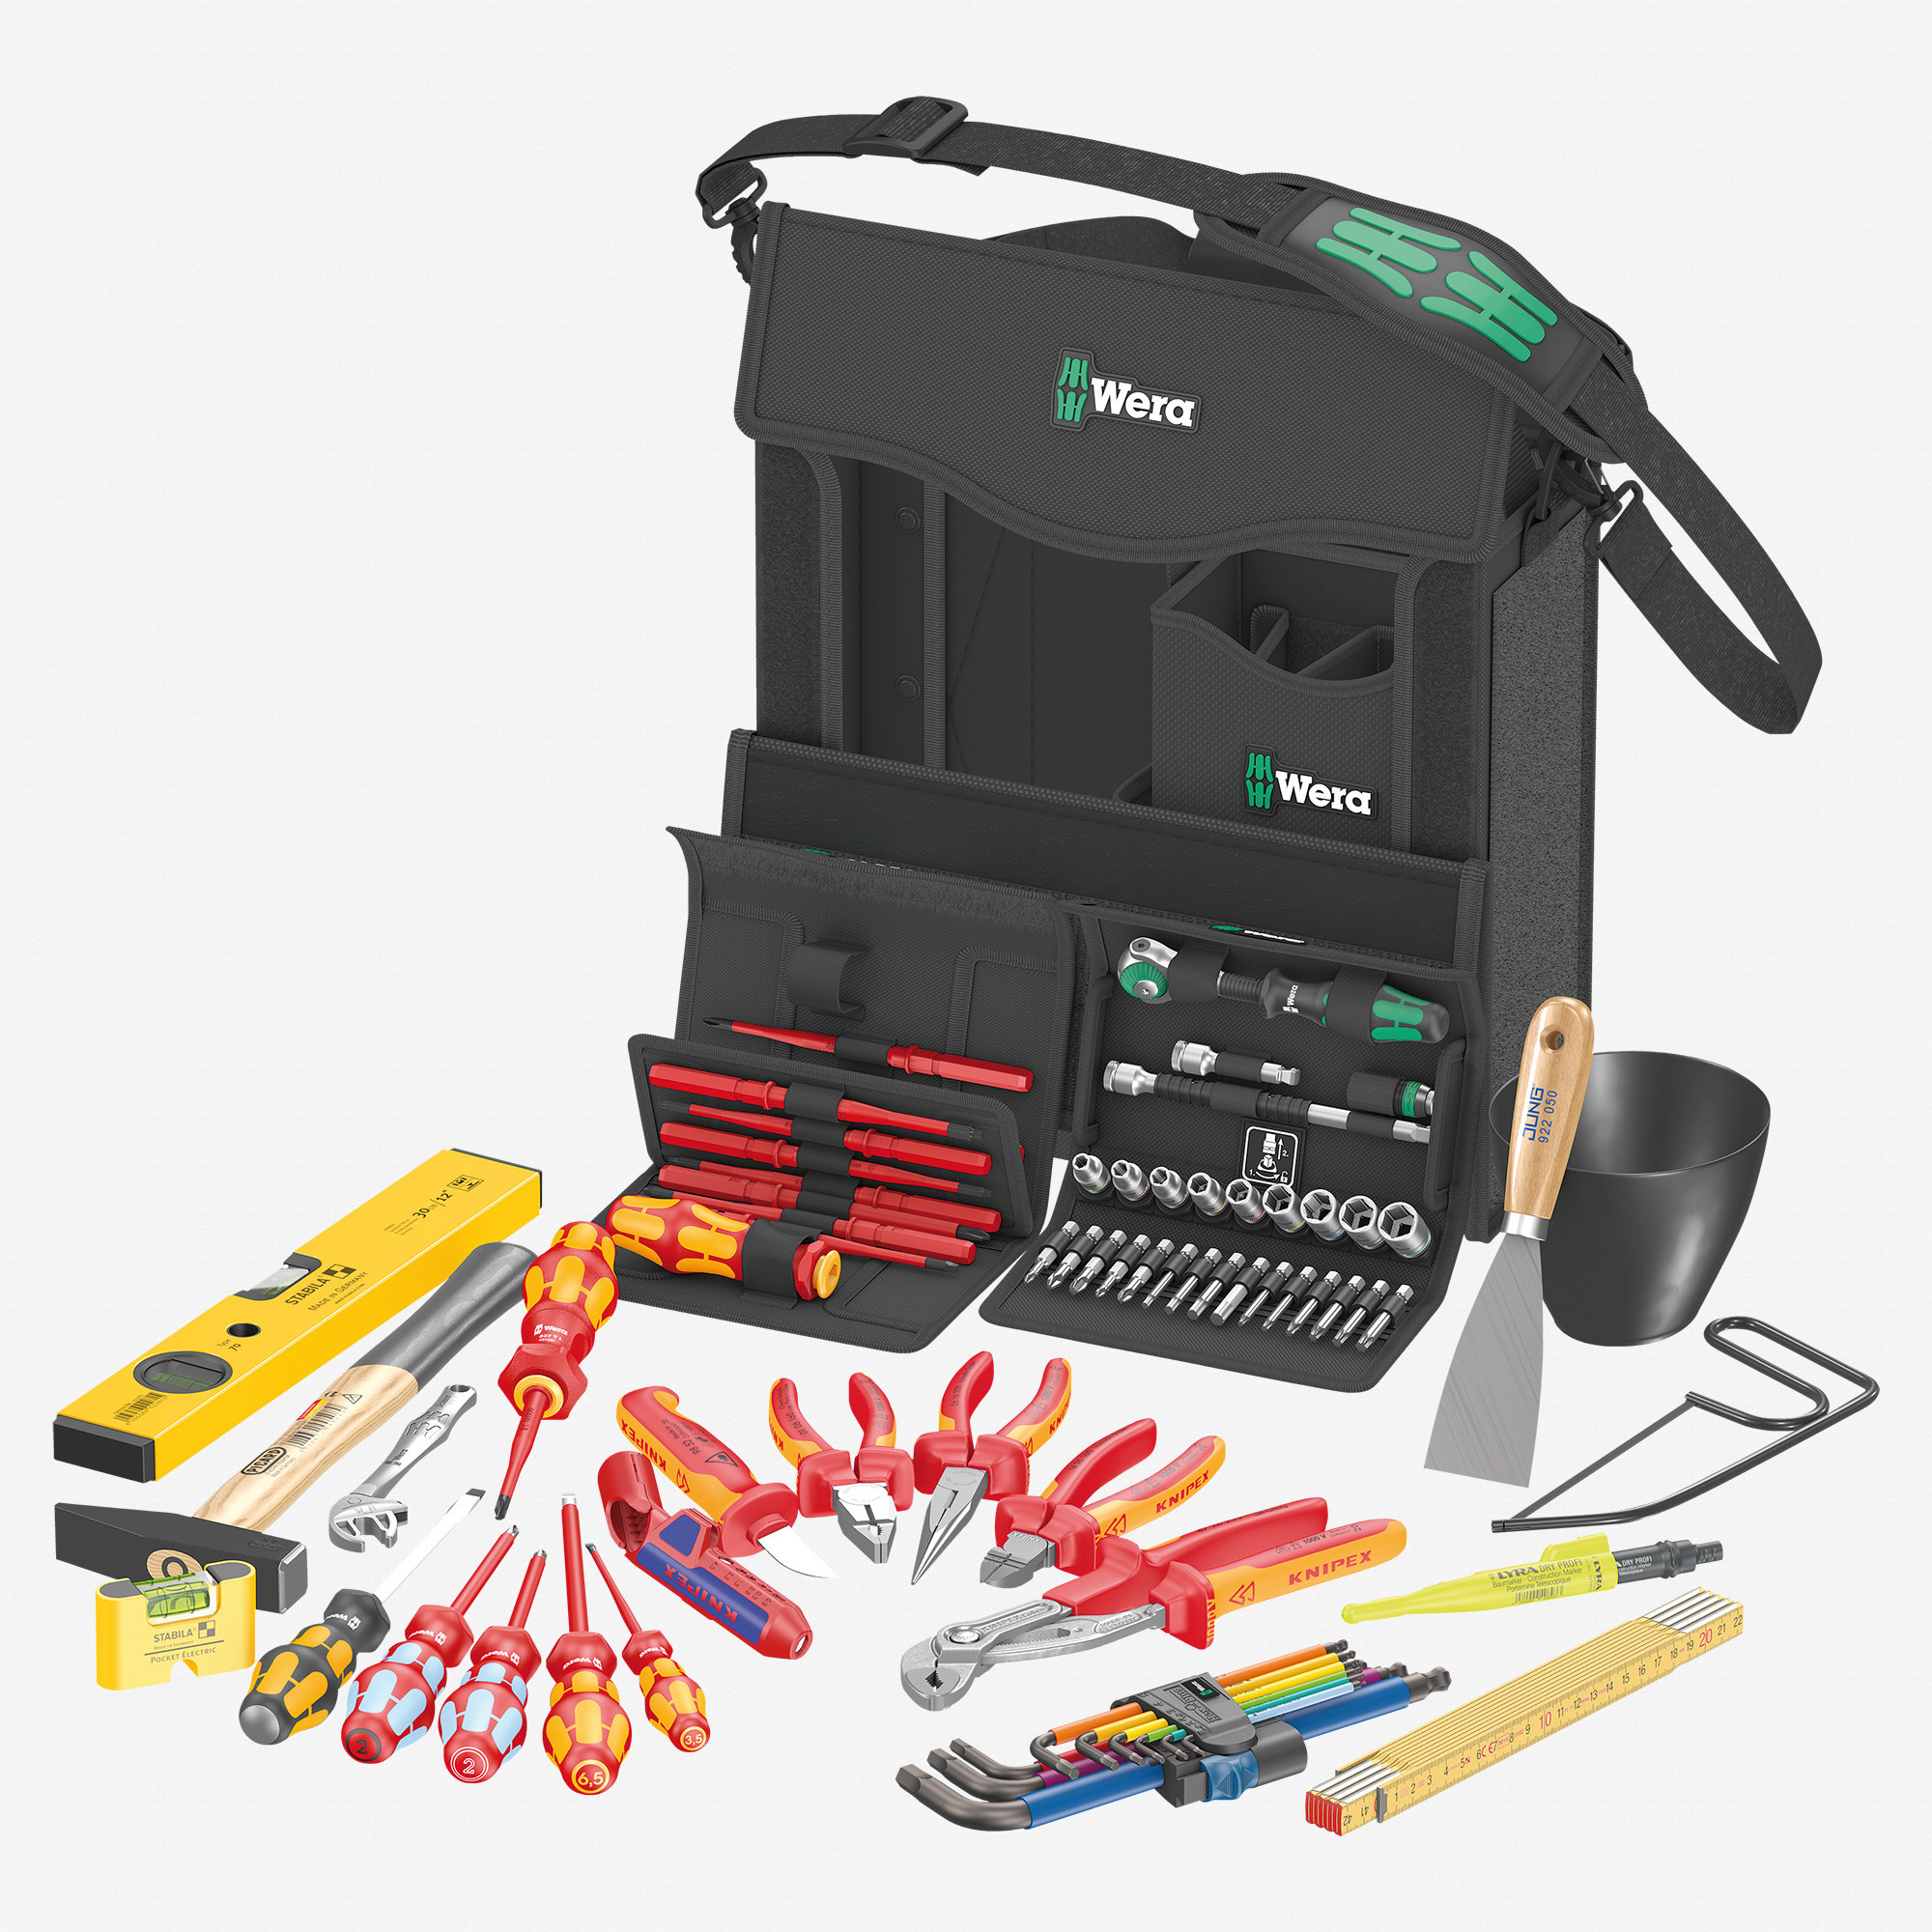 Wera 134025 2go E 1 Tool Set for Electricians, 73 Pieces